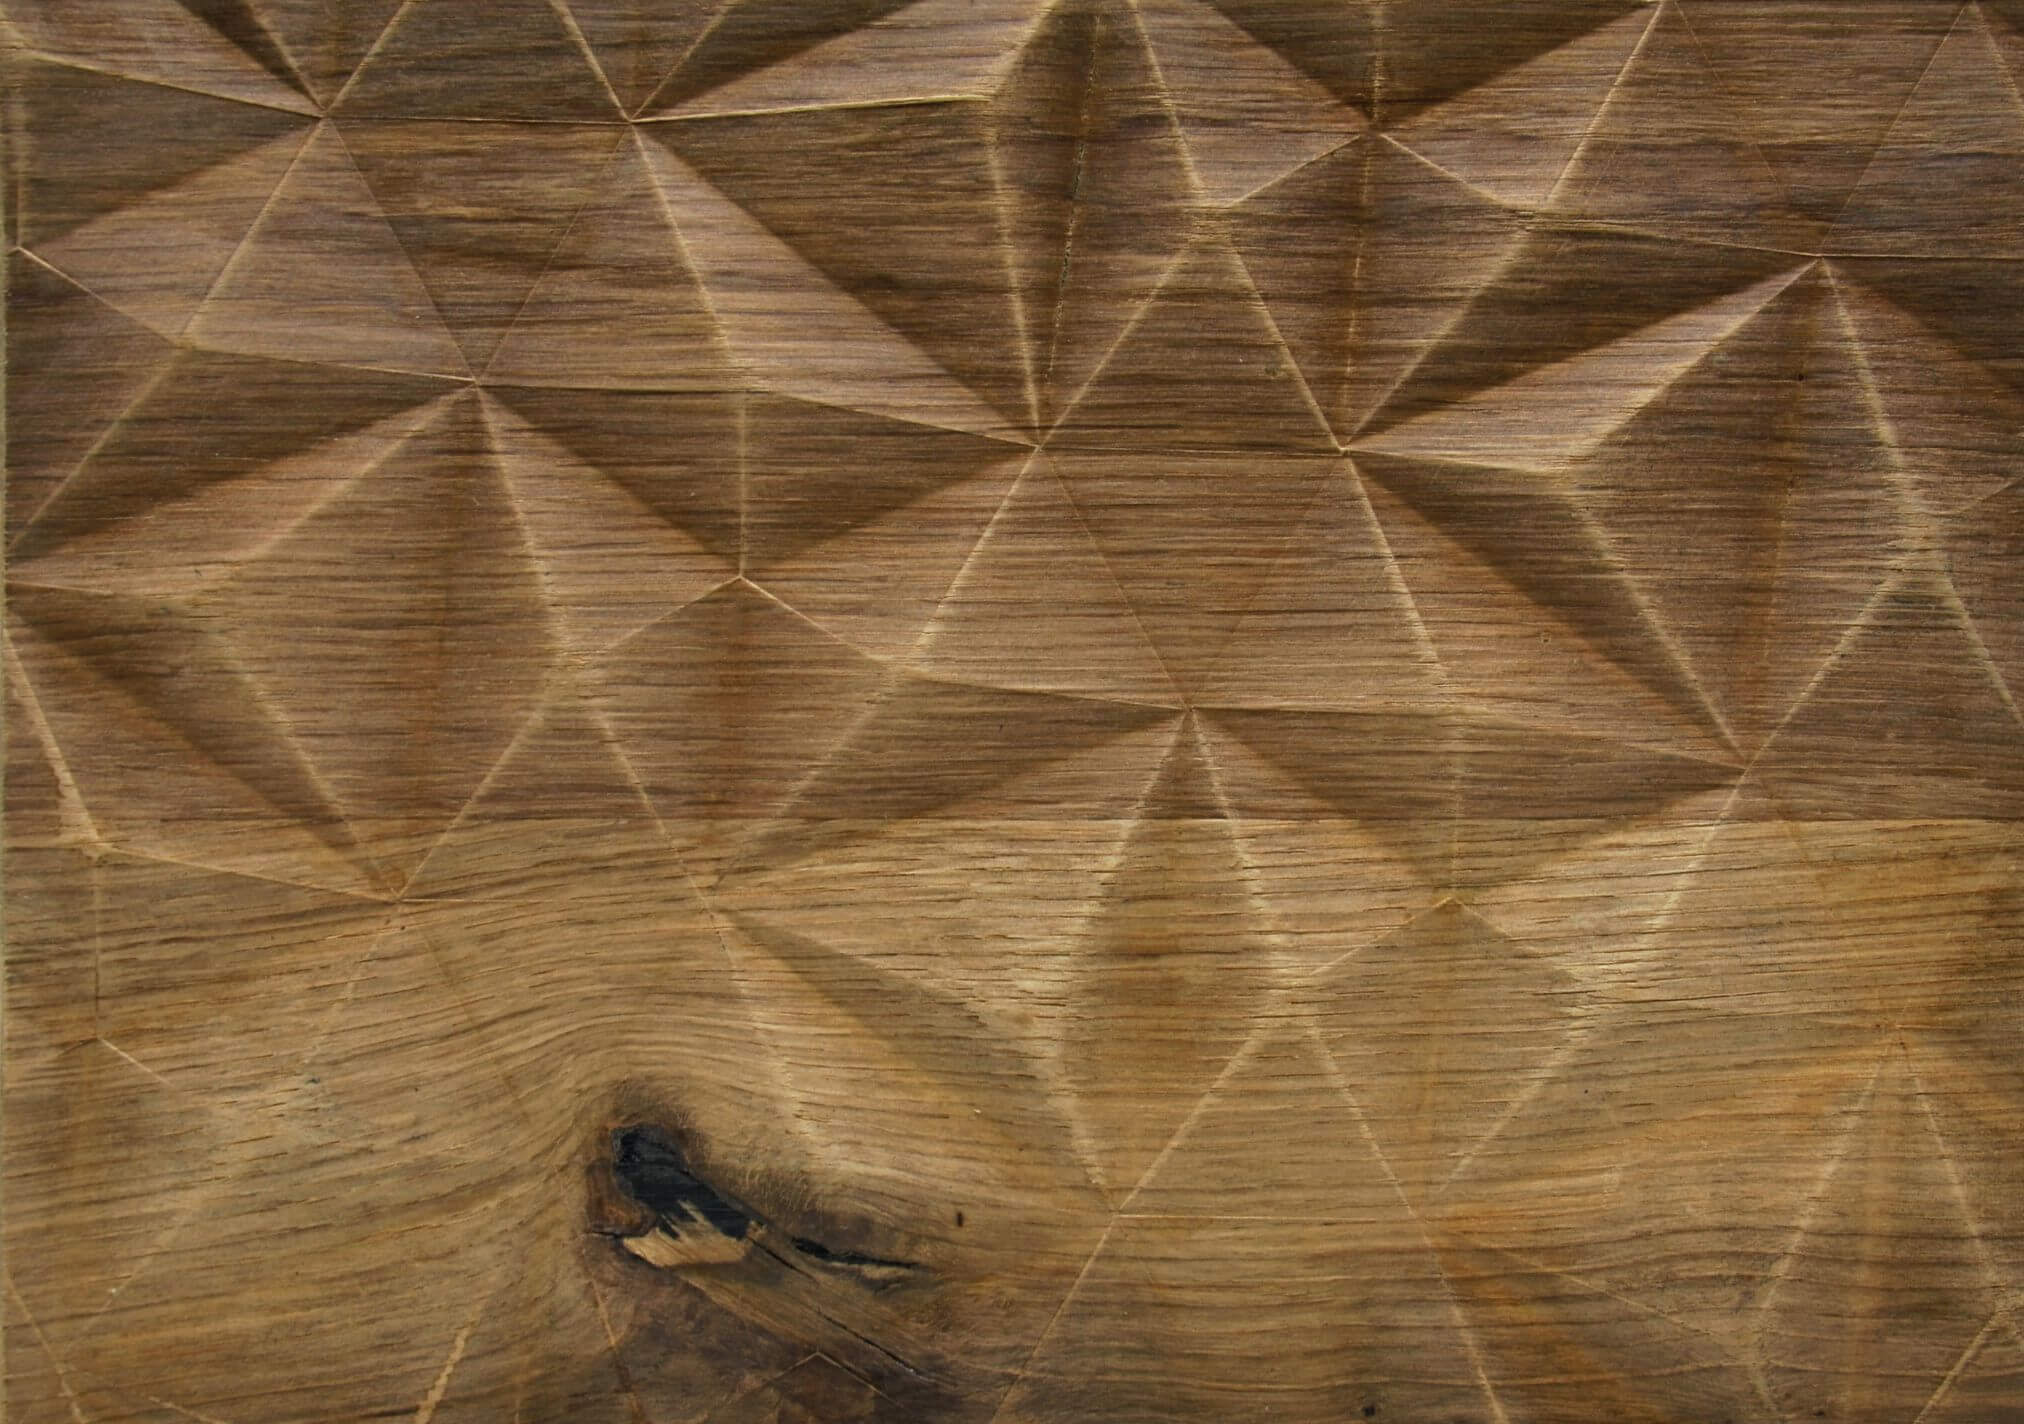 02 – Old Oak - Real wood veneer